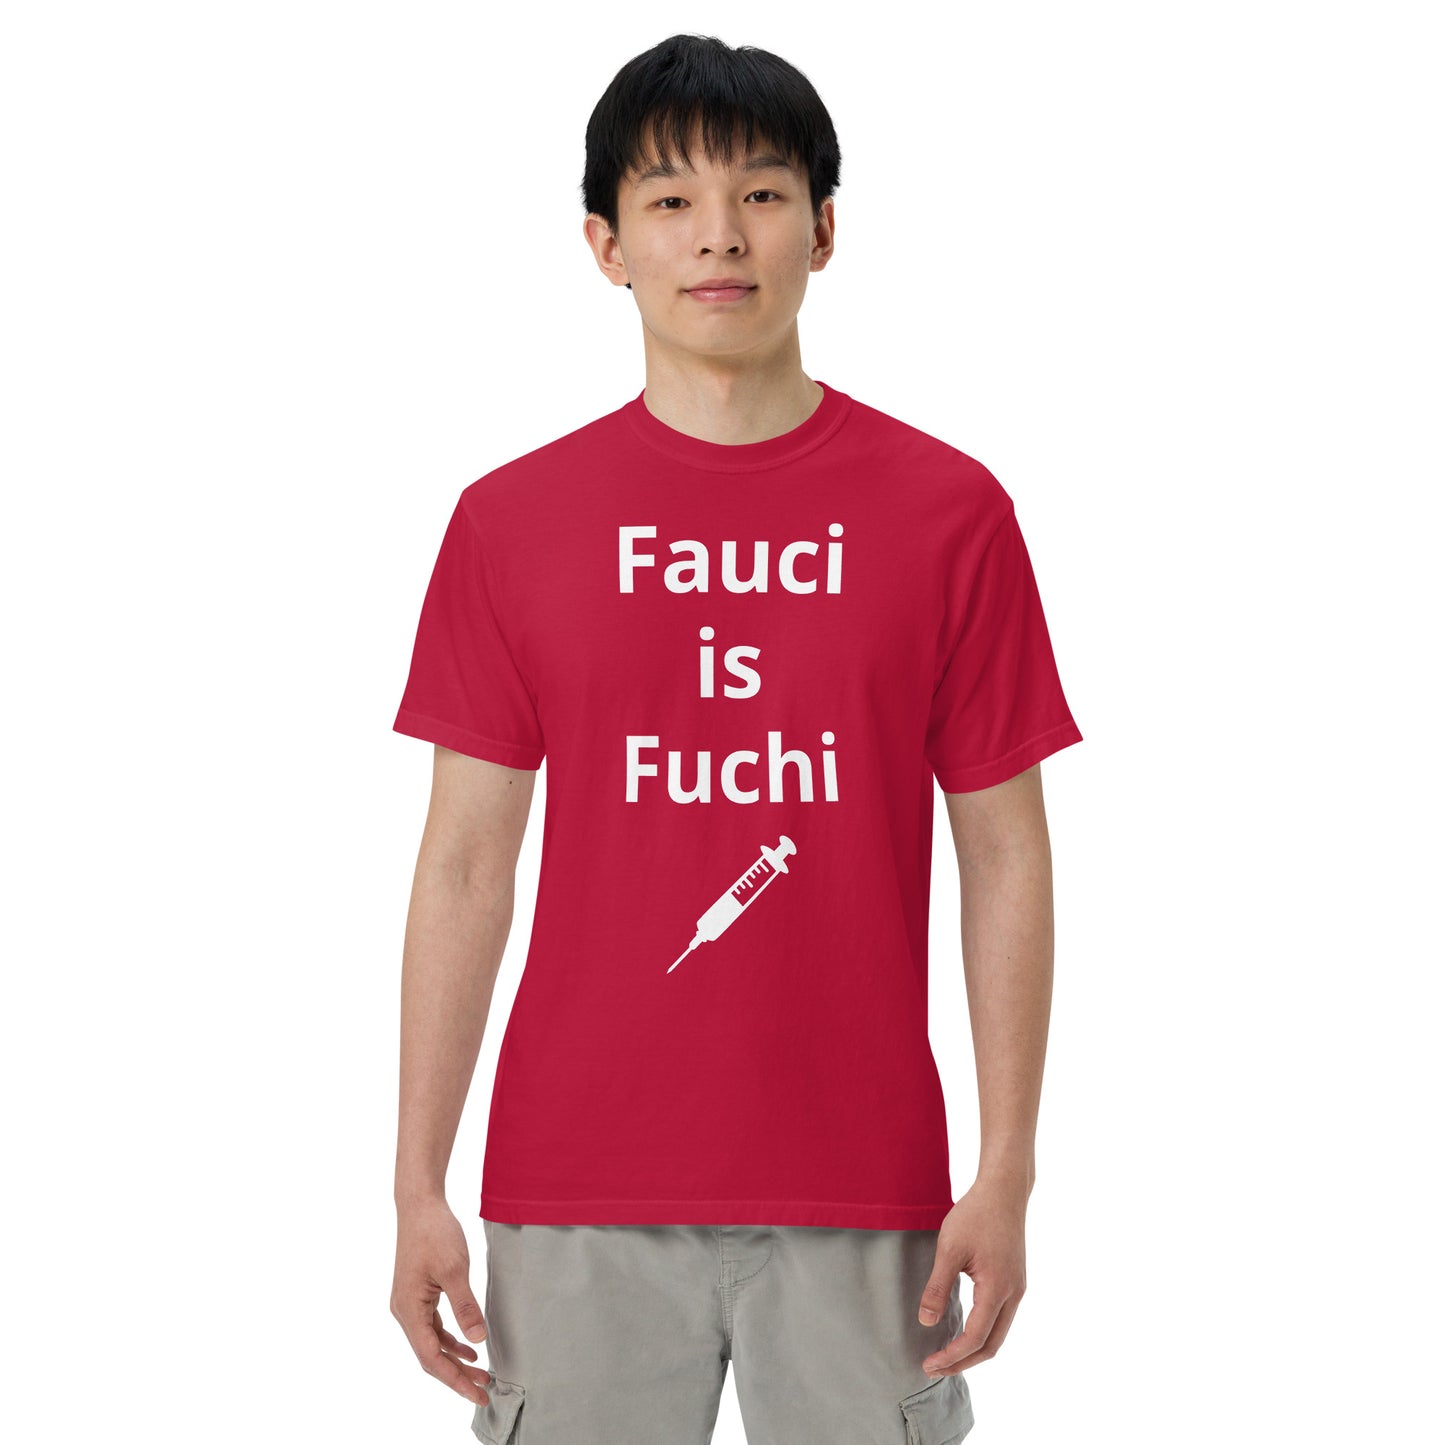 Fauci is Fuchi